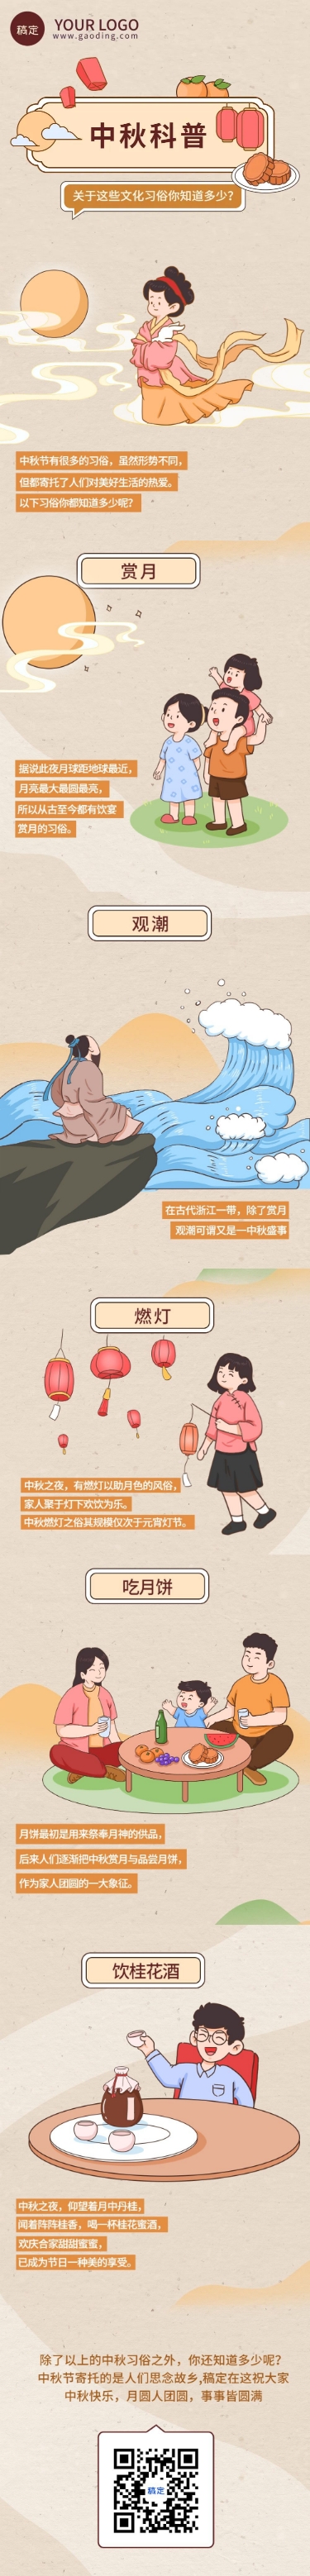 中秋节节日祝福手绘插画条漫长图预览效果